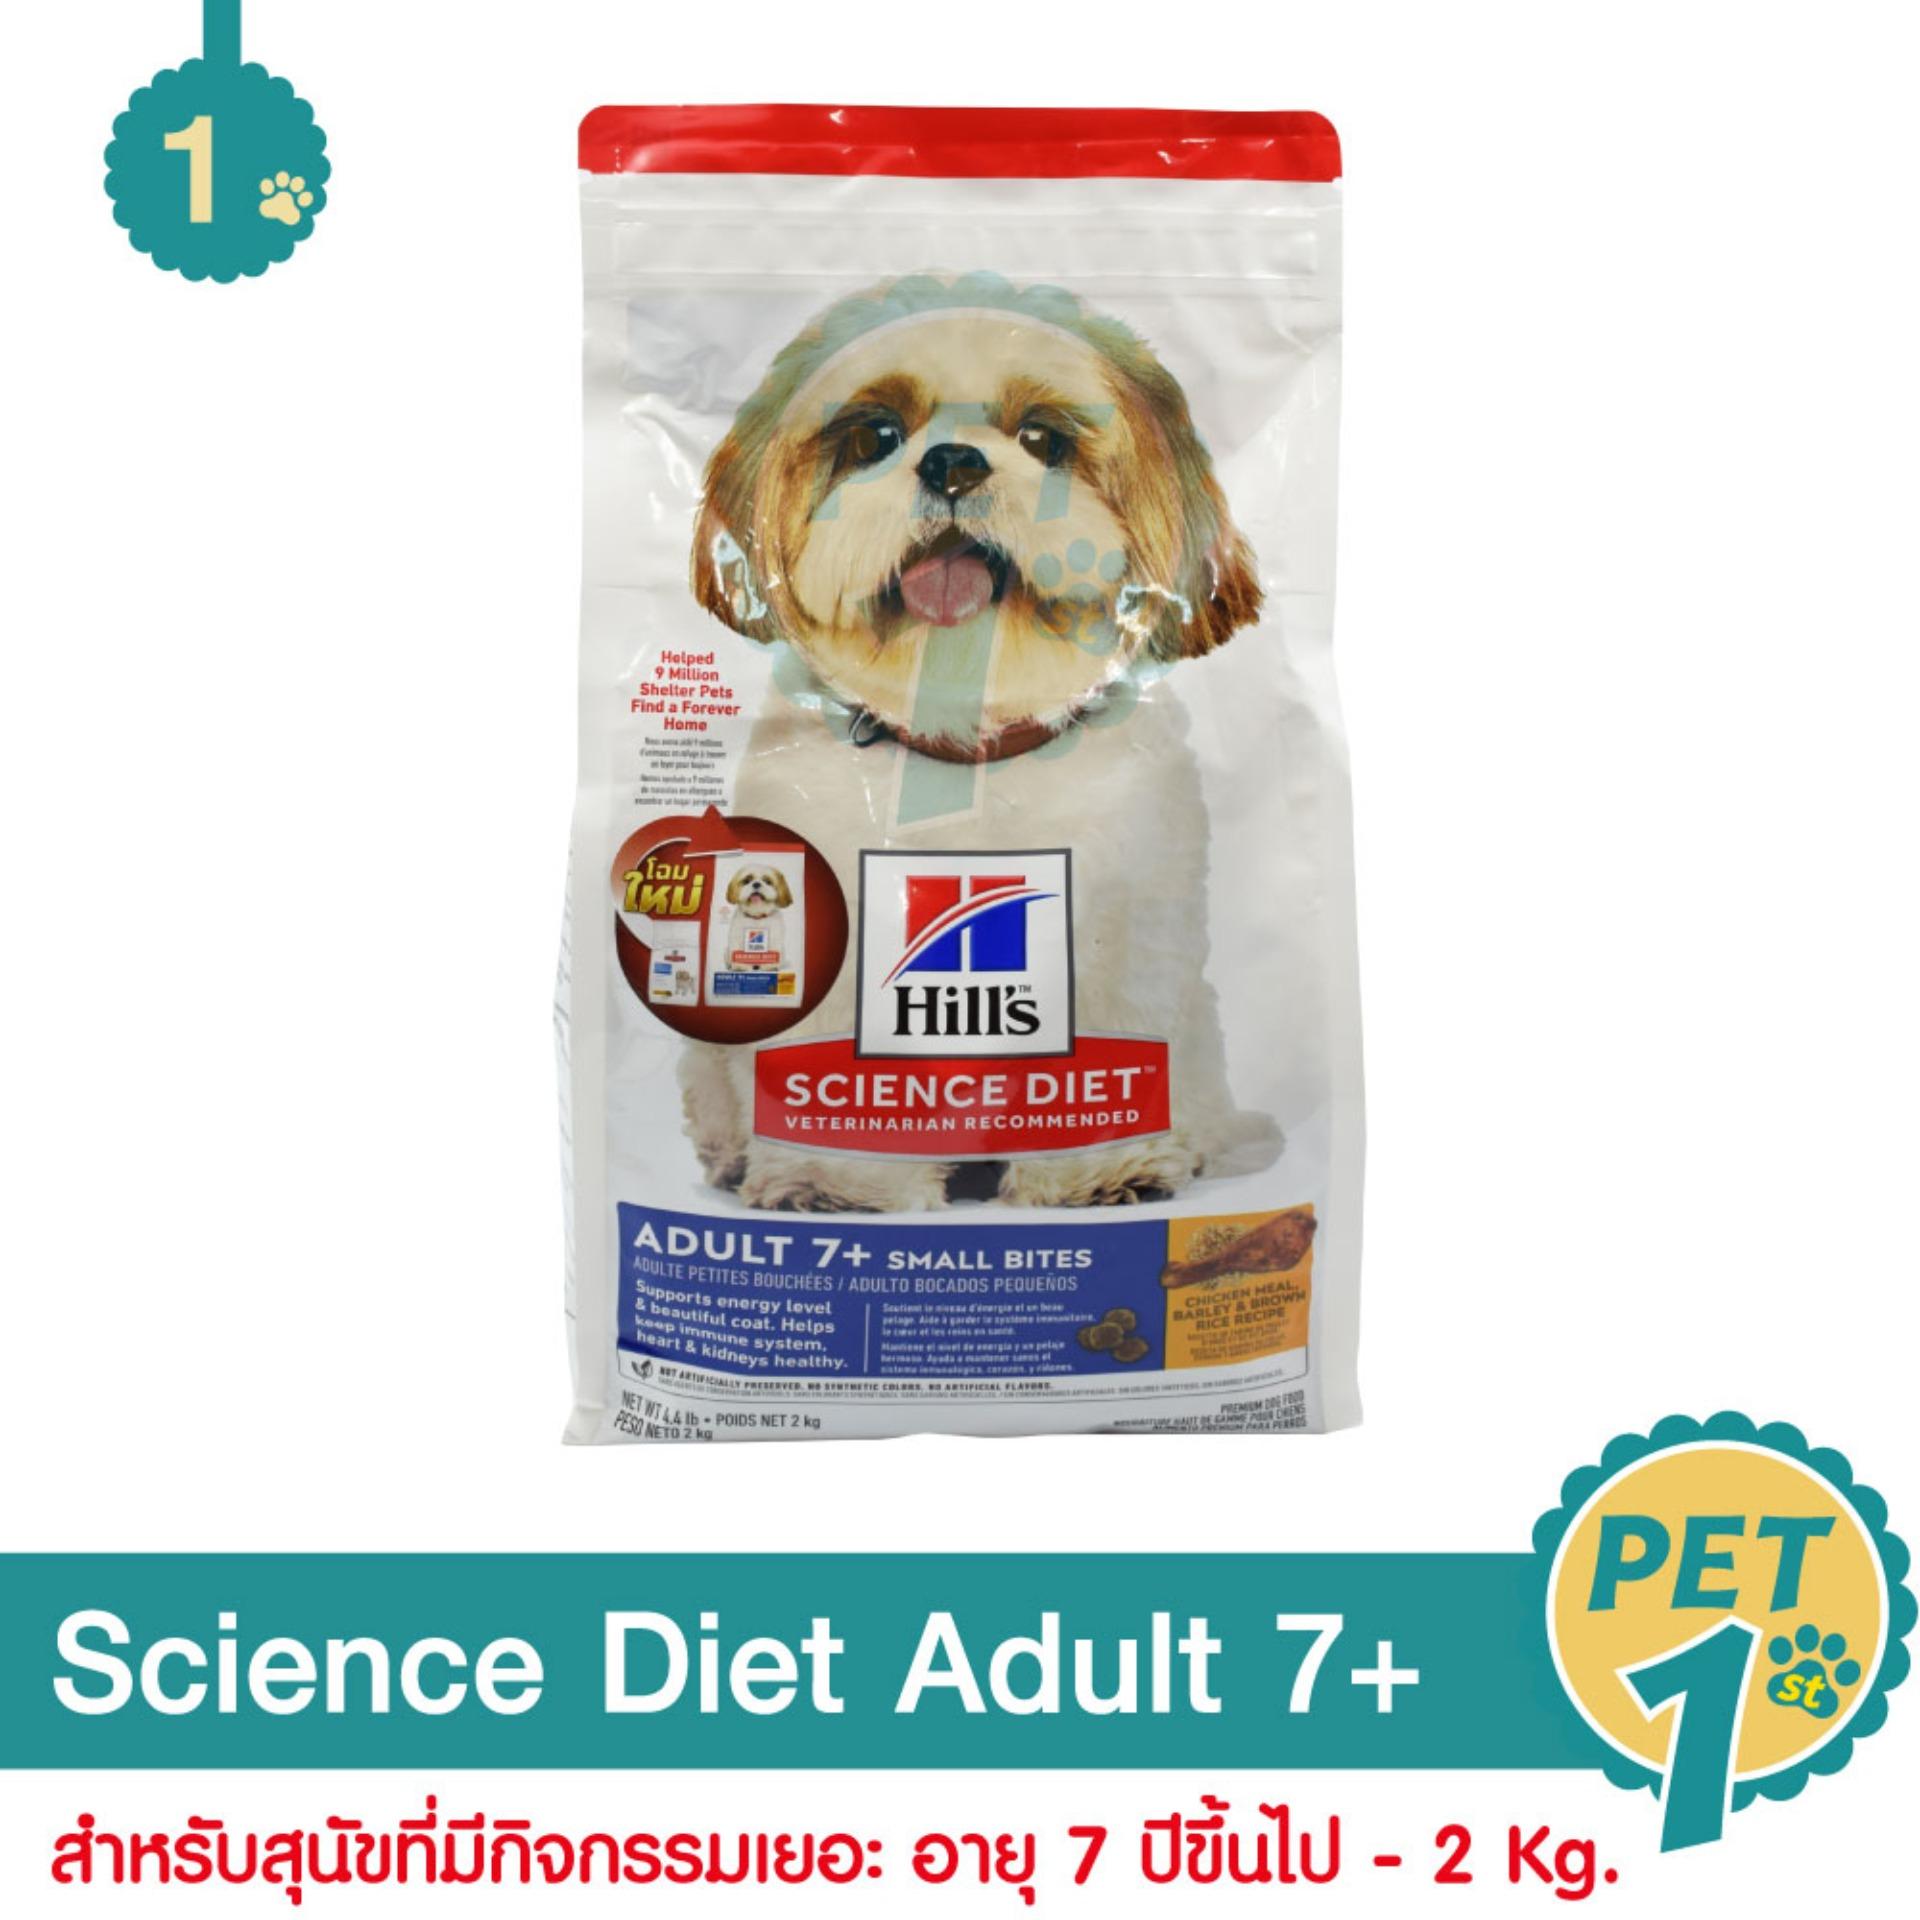 Science Diet Adult 7+ อาหารสุนัข สูตรย่อยง่าย เหมาะสำหรับสุนัขที่มีกิจกรรมเยอะ ช่วยเพิ่มความมีชีวิตชีวา เม็ดเล็กทานง่ายเพื่อสุนัขโตอายุ 7 ปีขึ้นไป 2 Kg.